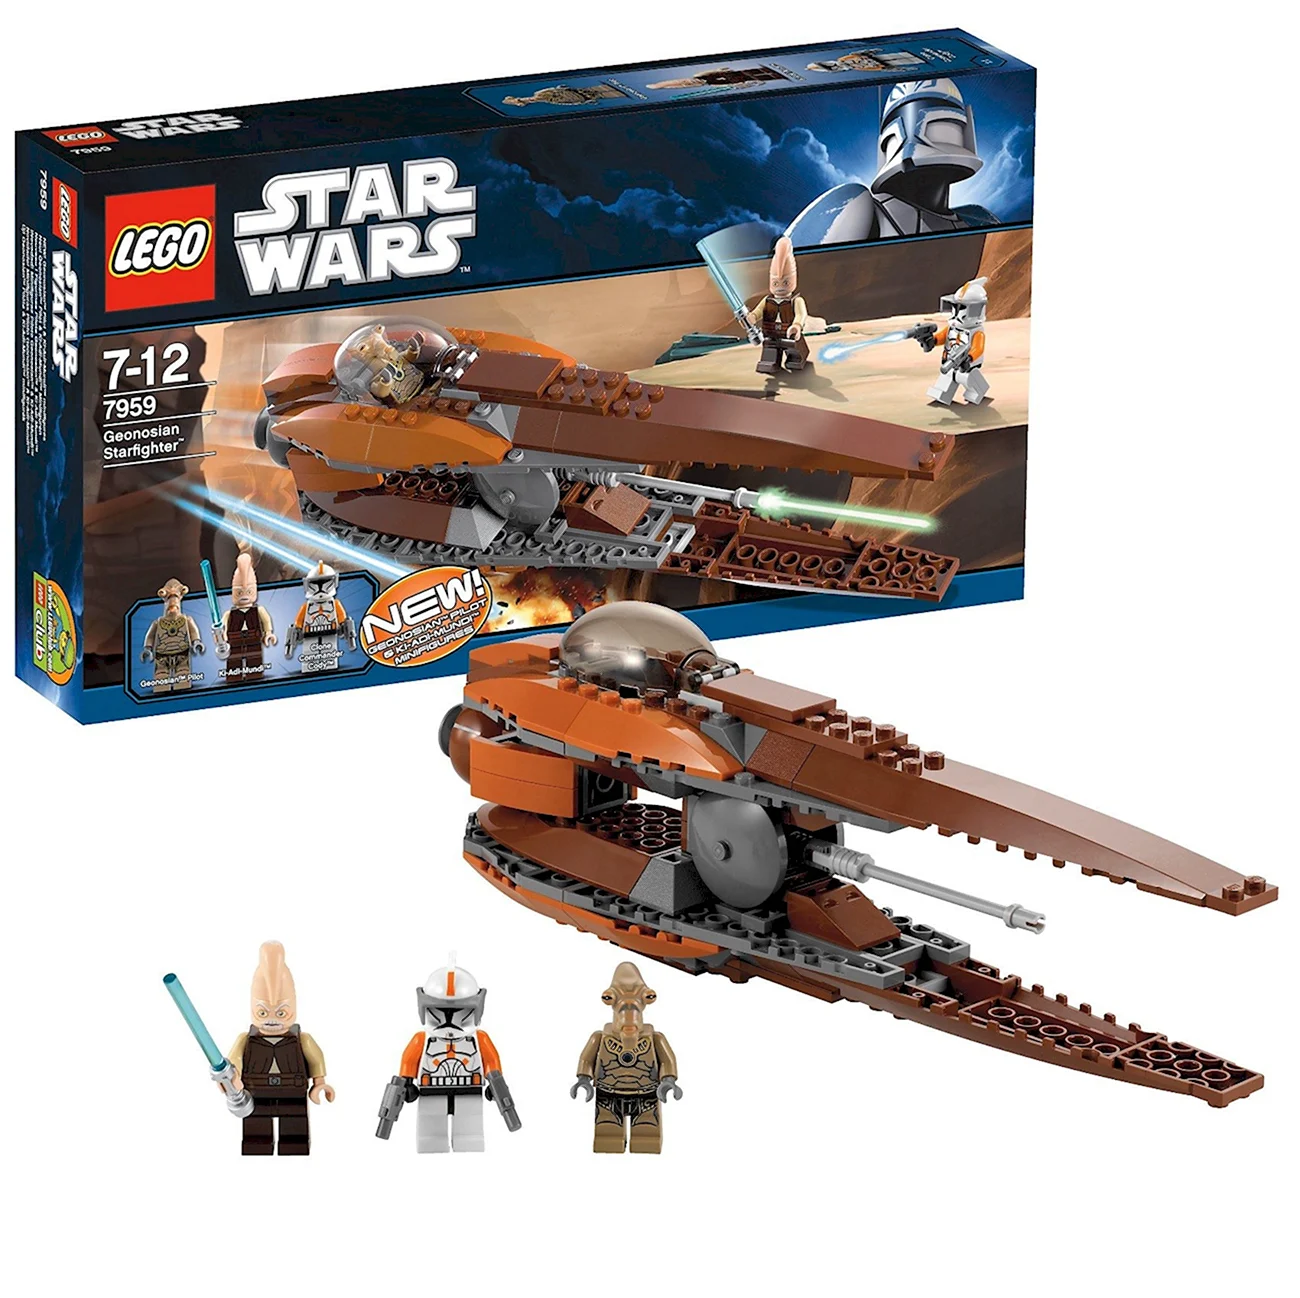 Конструктор LEGO Star Wars 7959 Звездный истребитель Джеонозианцев. Картинка